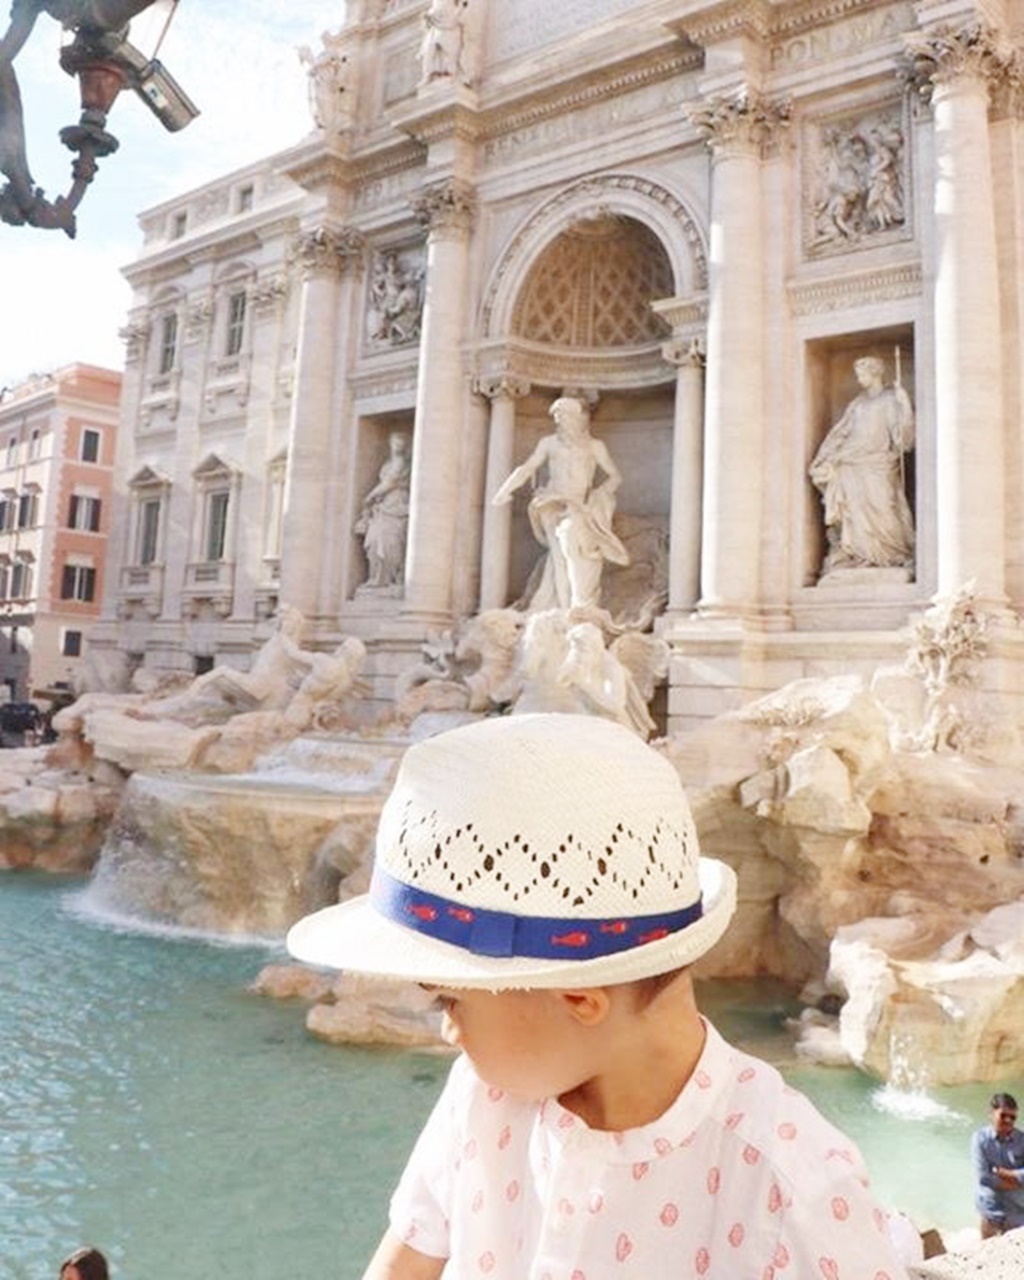 Vacances de 7 jours à Rome avec enfant | VOYAGES ET ENFANTS